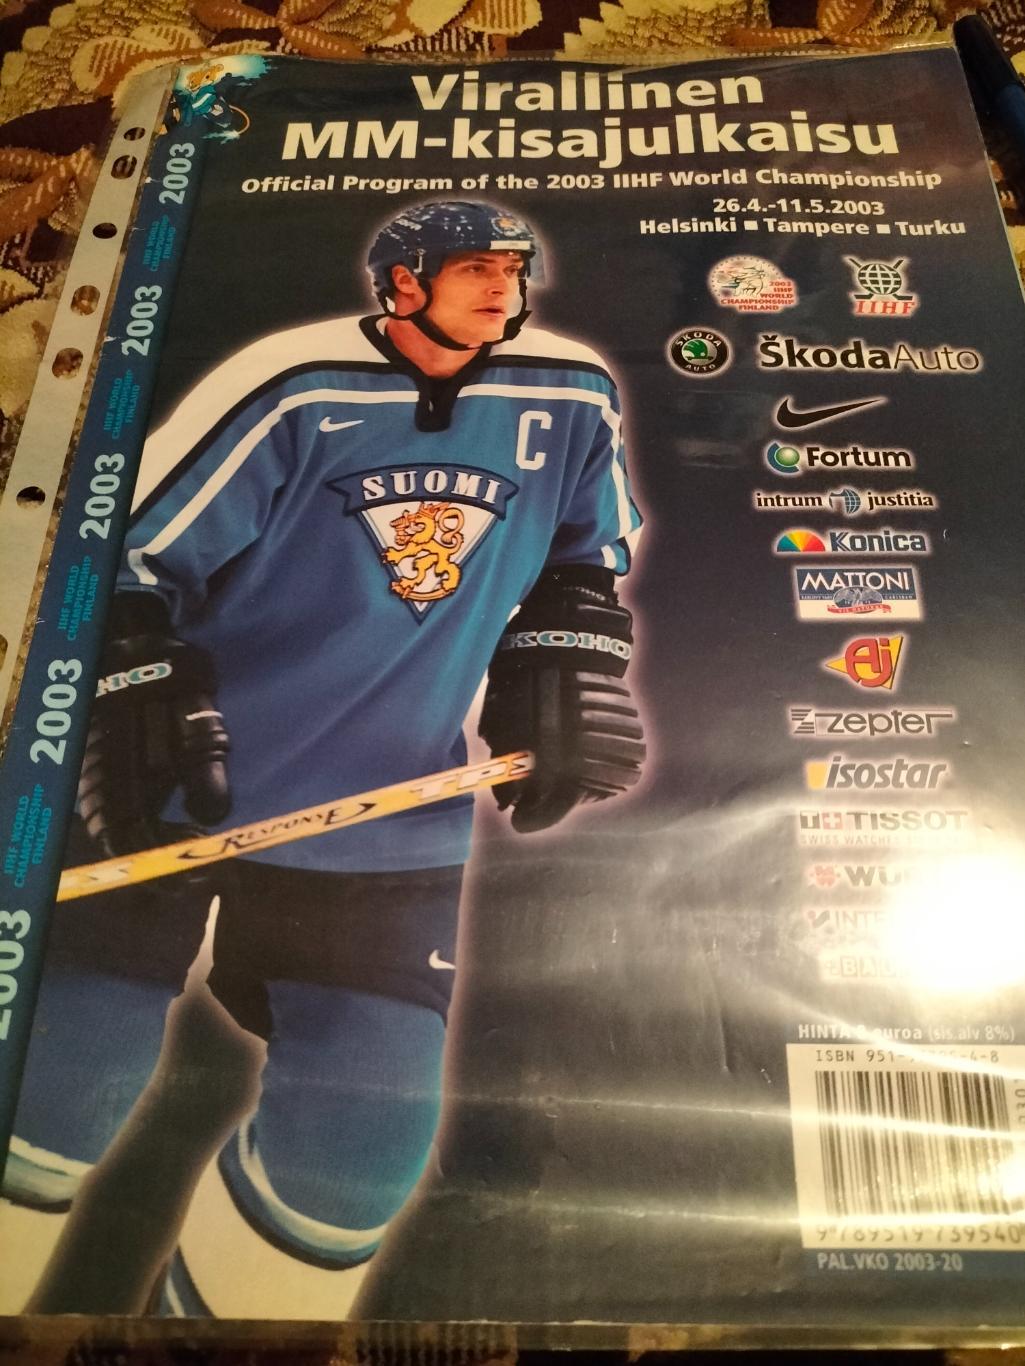 Официальная программа по хоккею 2003 год в Финляндии.